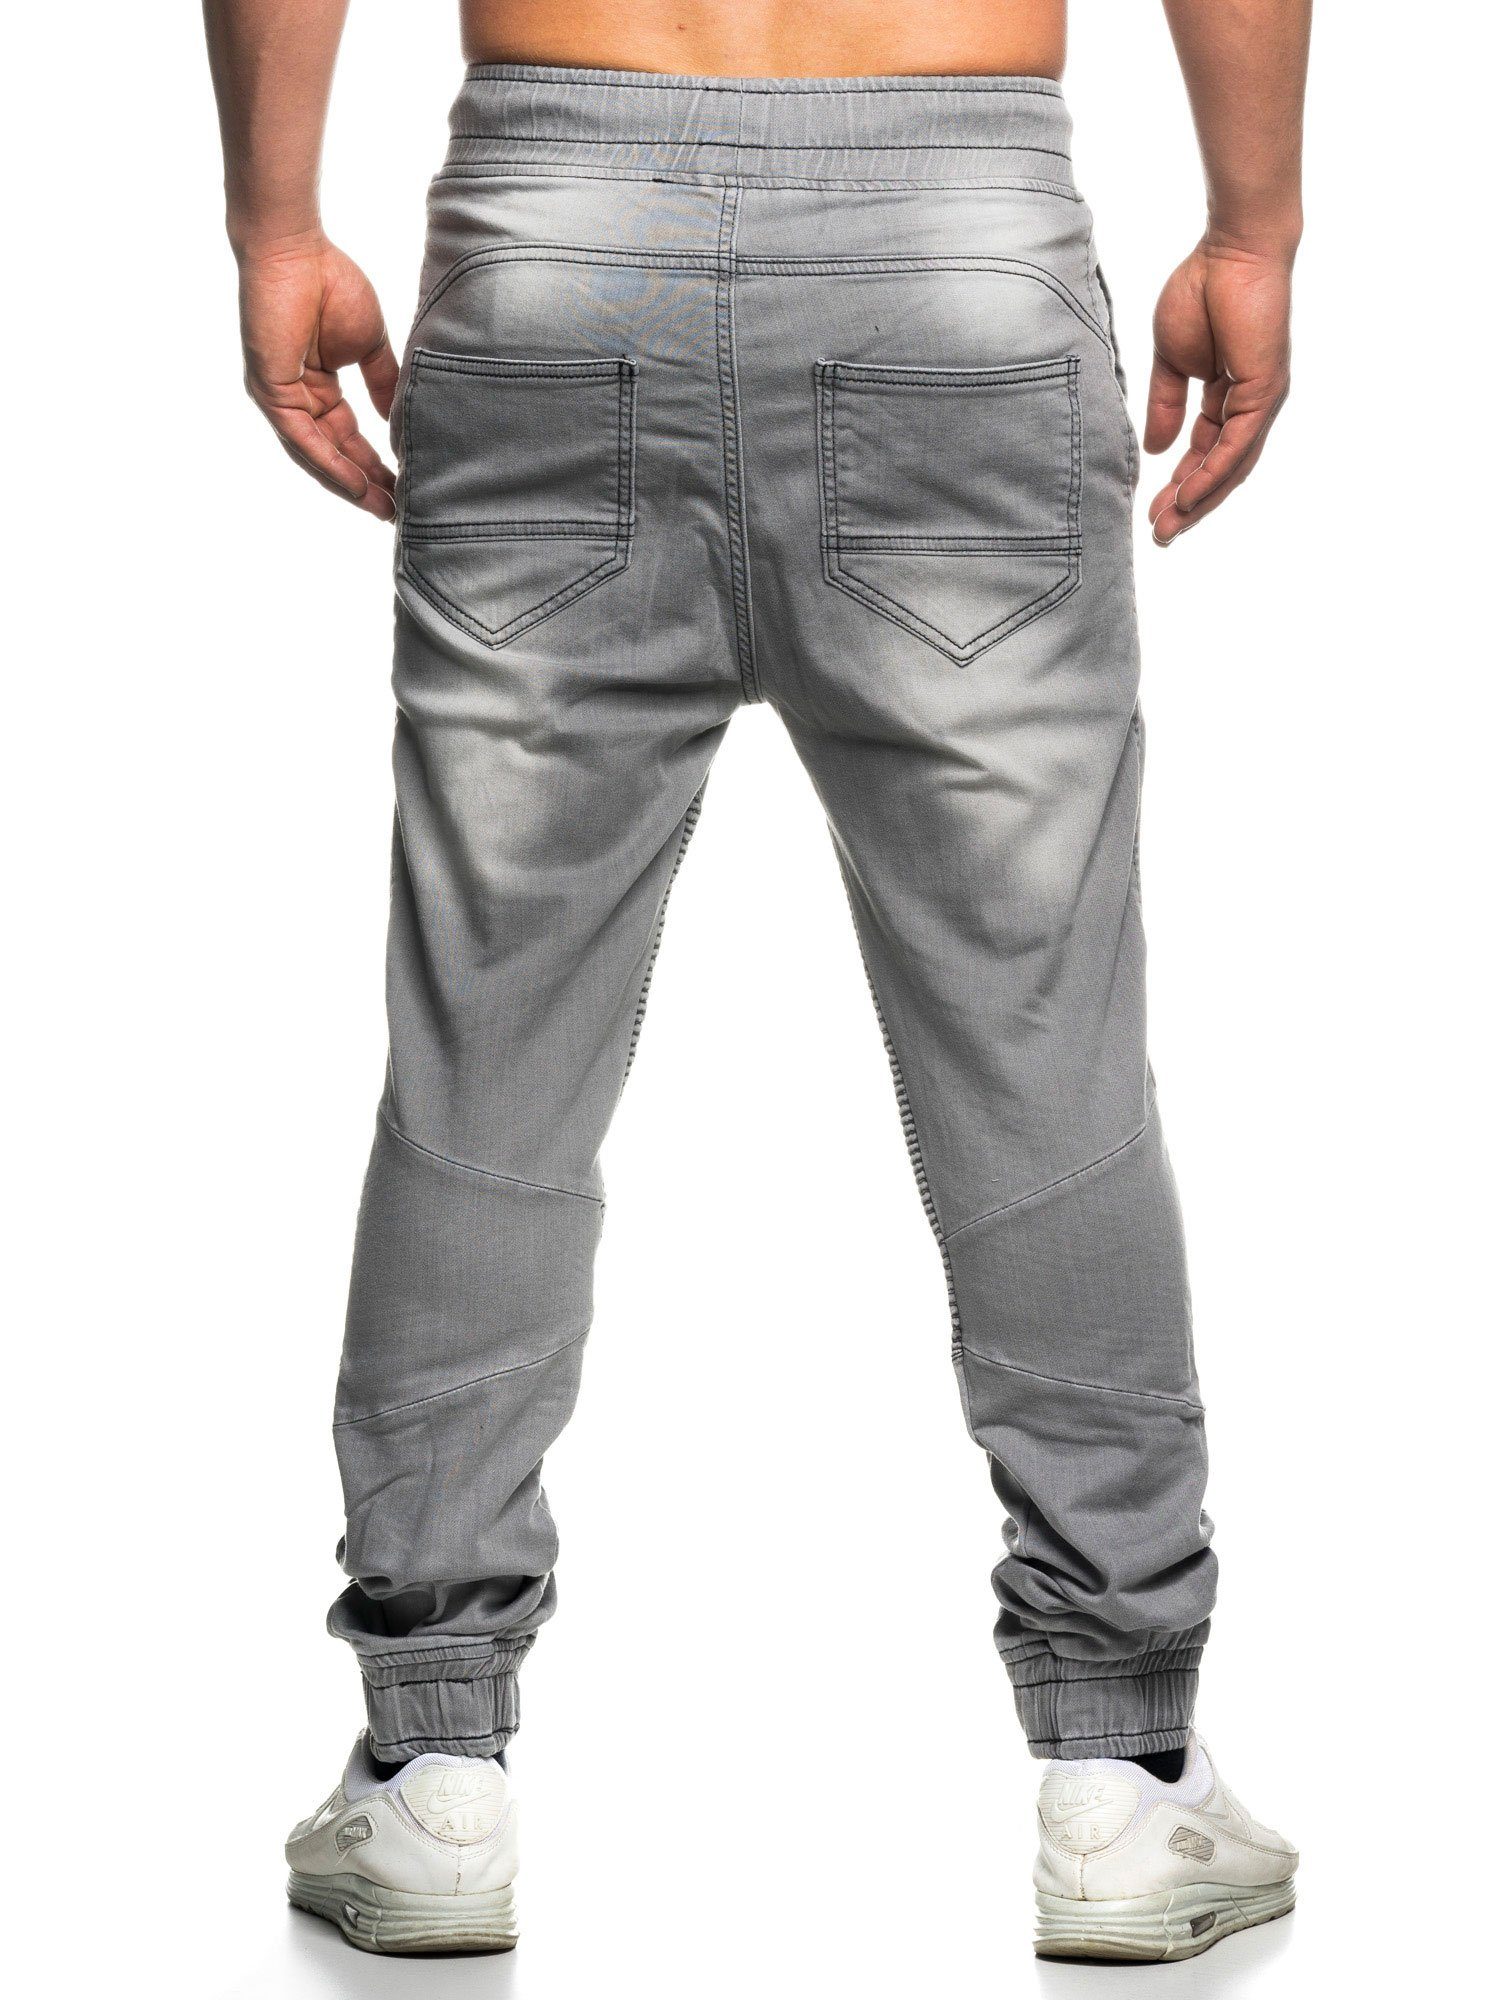 Straight-Jeans Sweat 16505 Biker-Look & grau Tazzio Jogger-Stil Hose im